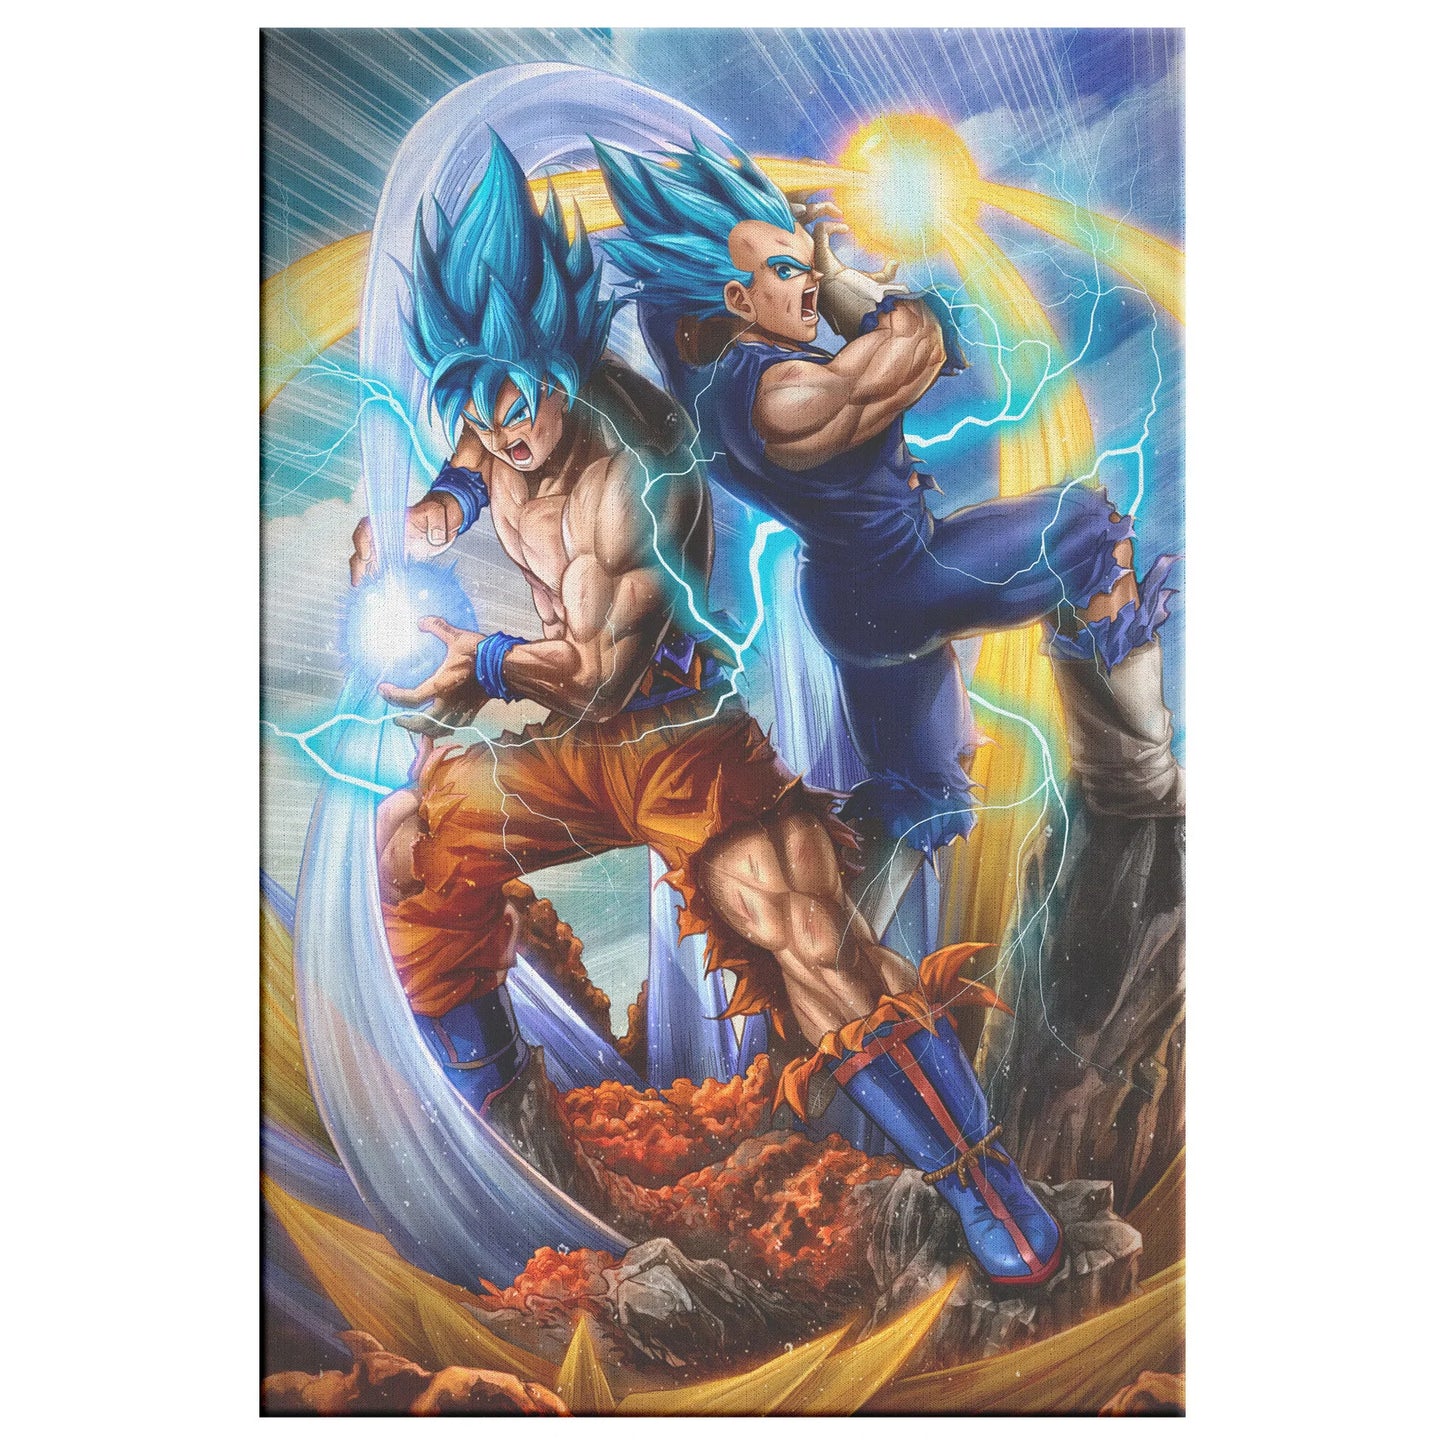 Dragon Ball Super - Super Saiyan God Vegeta and Goku  Art Print for Sale  by JetFalco